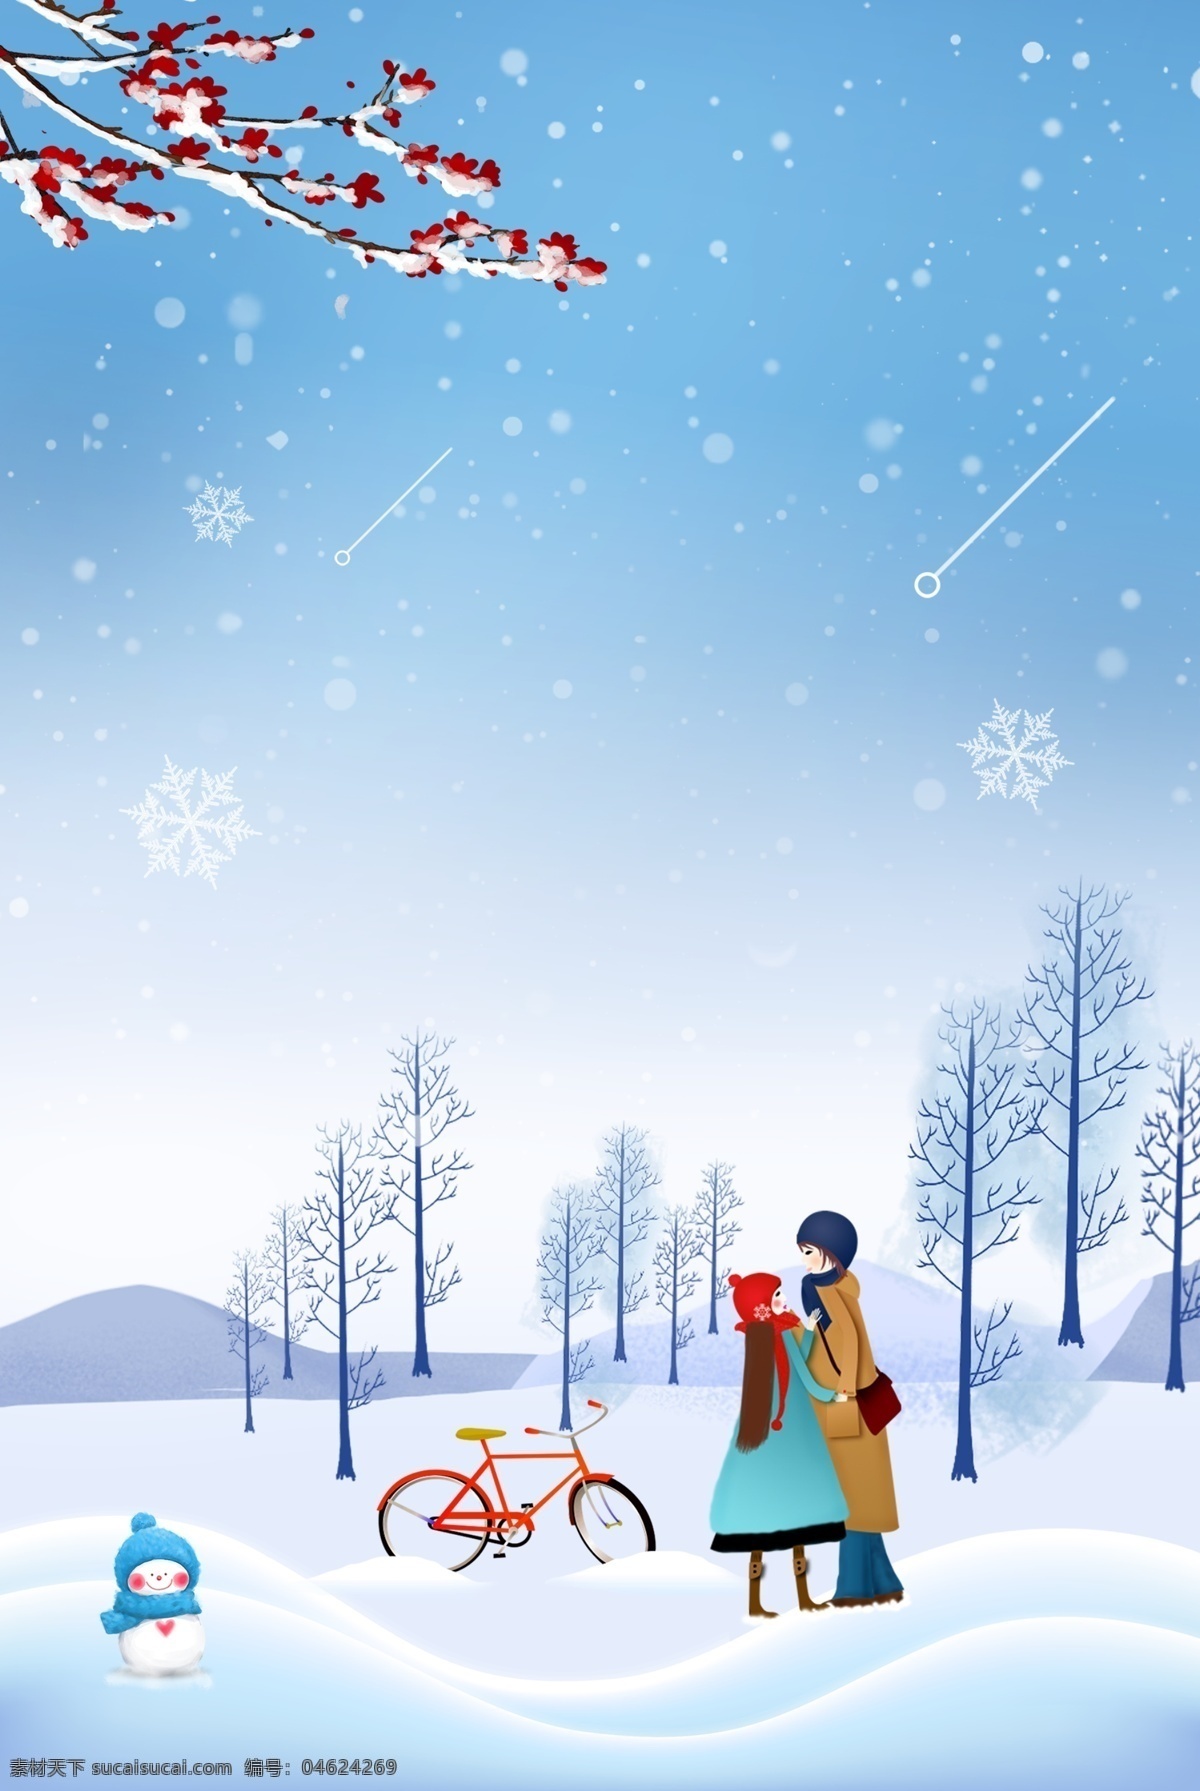 手绘 卡通 冬天 大雪 背景 雪花 情侣 时尚 树枝 积雪 雪地 女孩 男孩